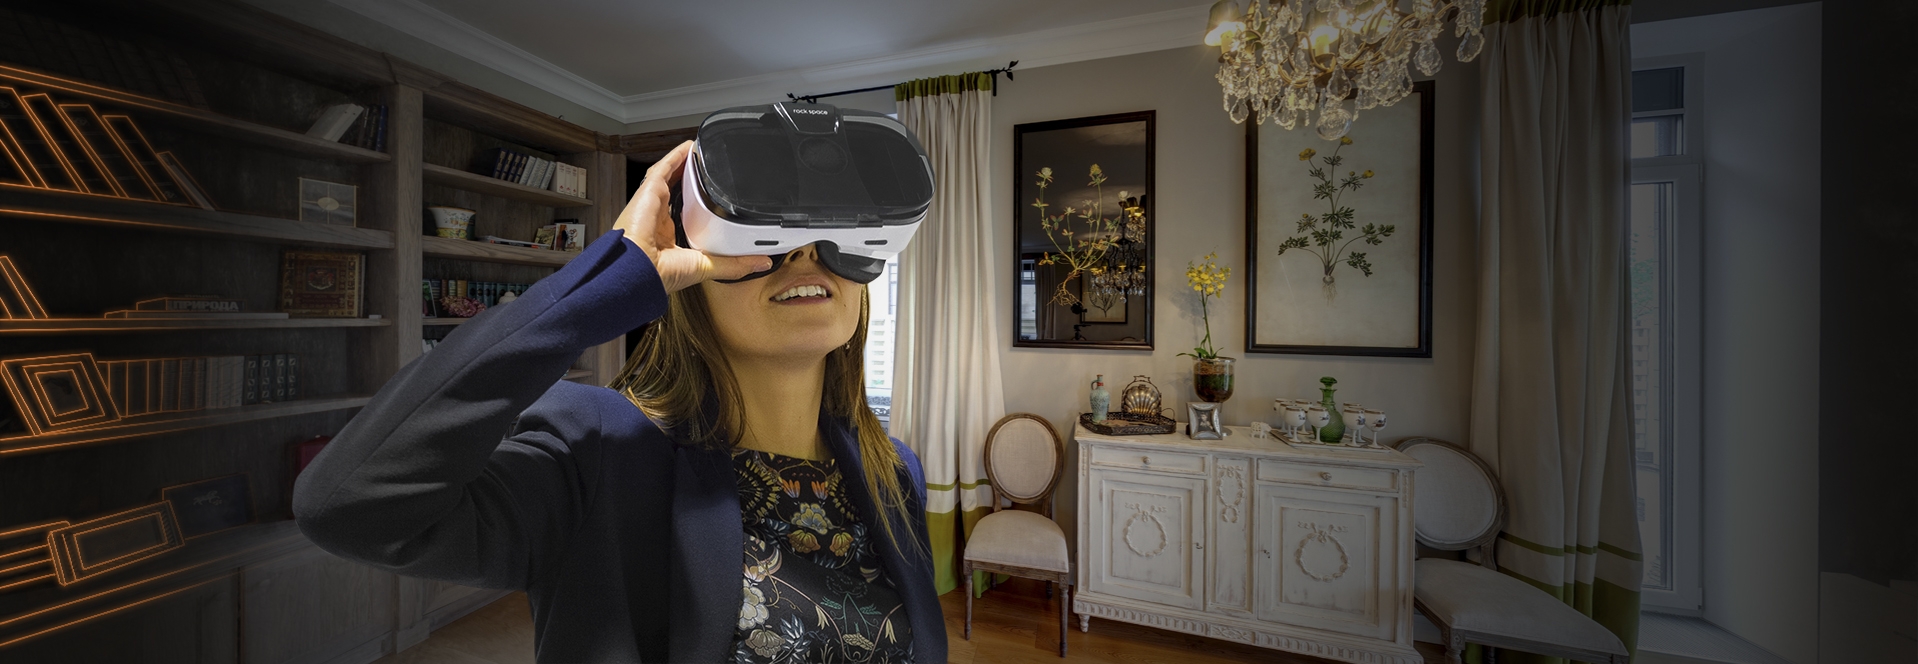 VR-недвижимость. Для какой категории недвижимости может быть полезна виртуальная реальность